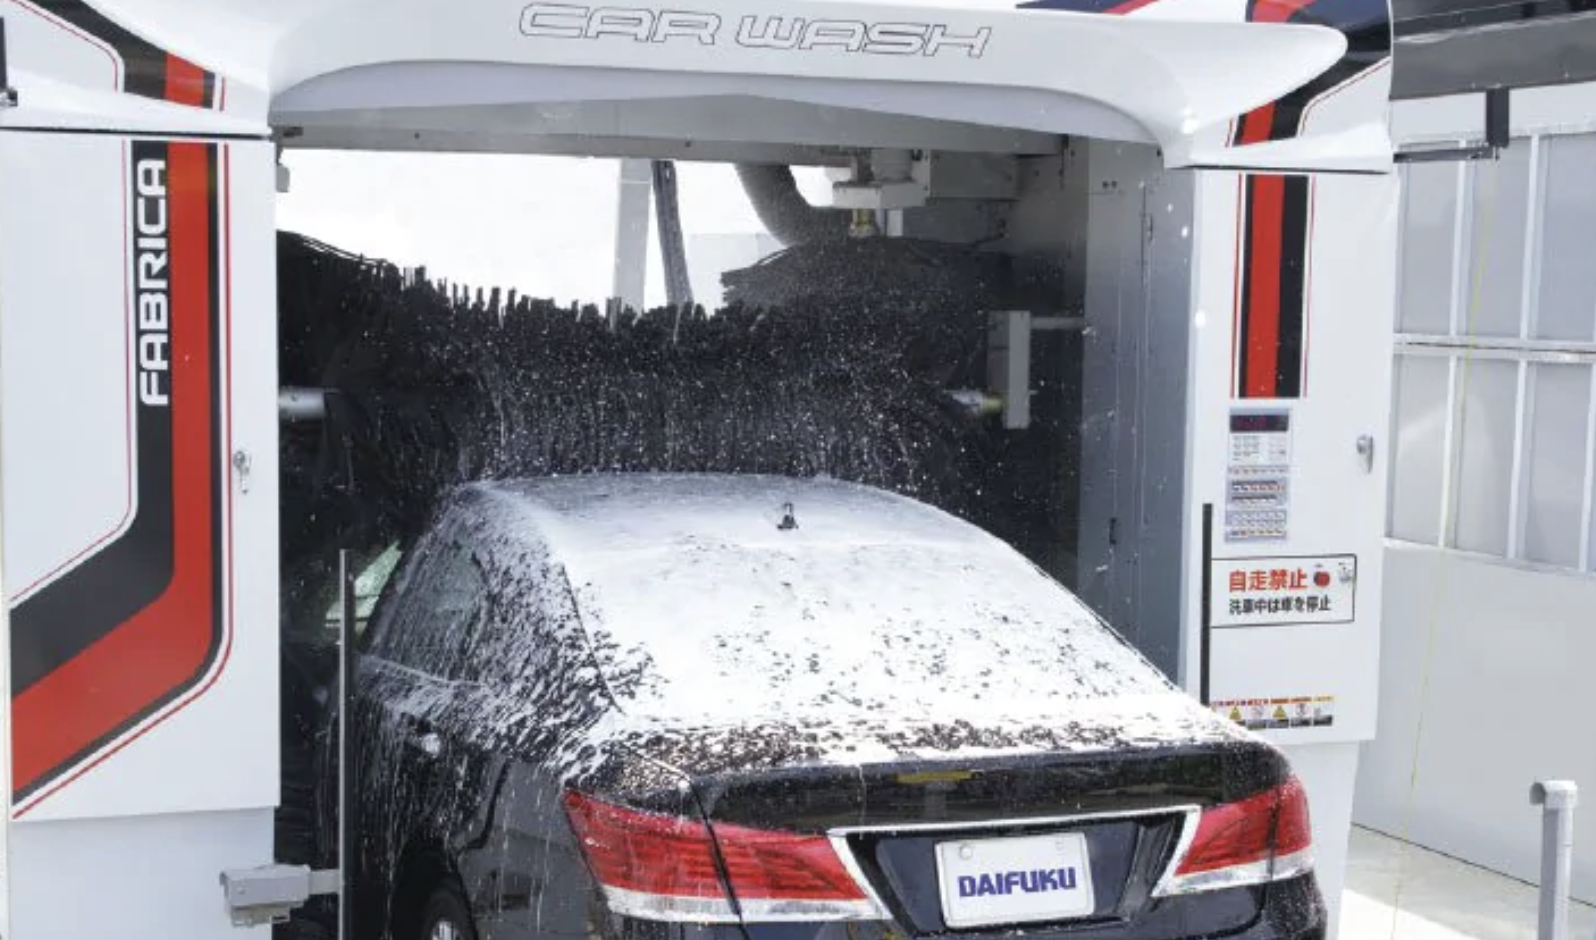 セルフ洗車場に来たら一つ前の車がとんでもない状態で洗車始まってた・・・大丈夫か！？